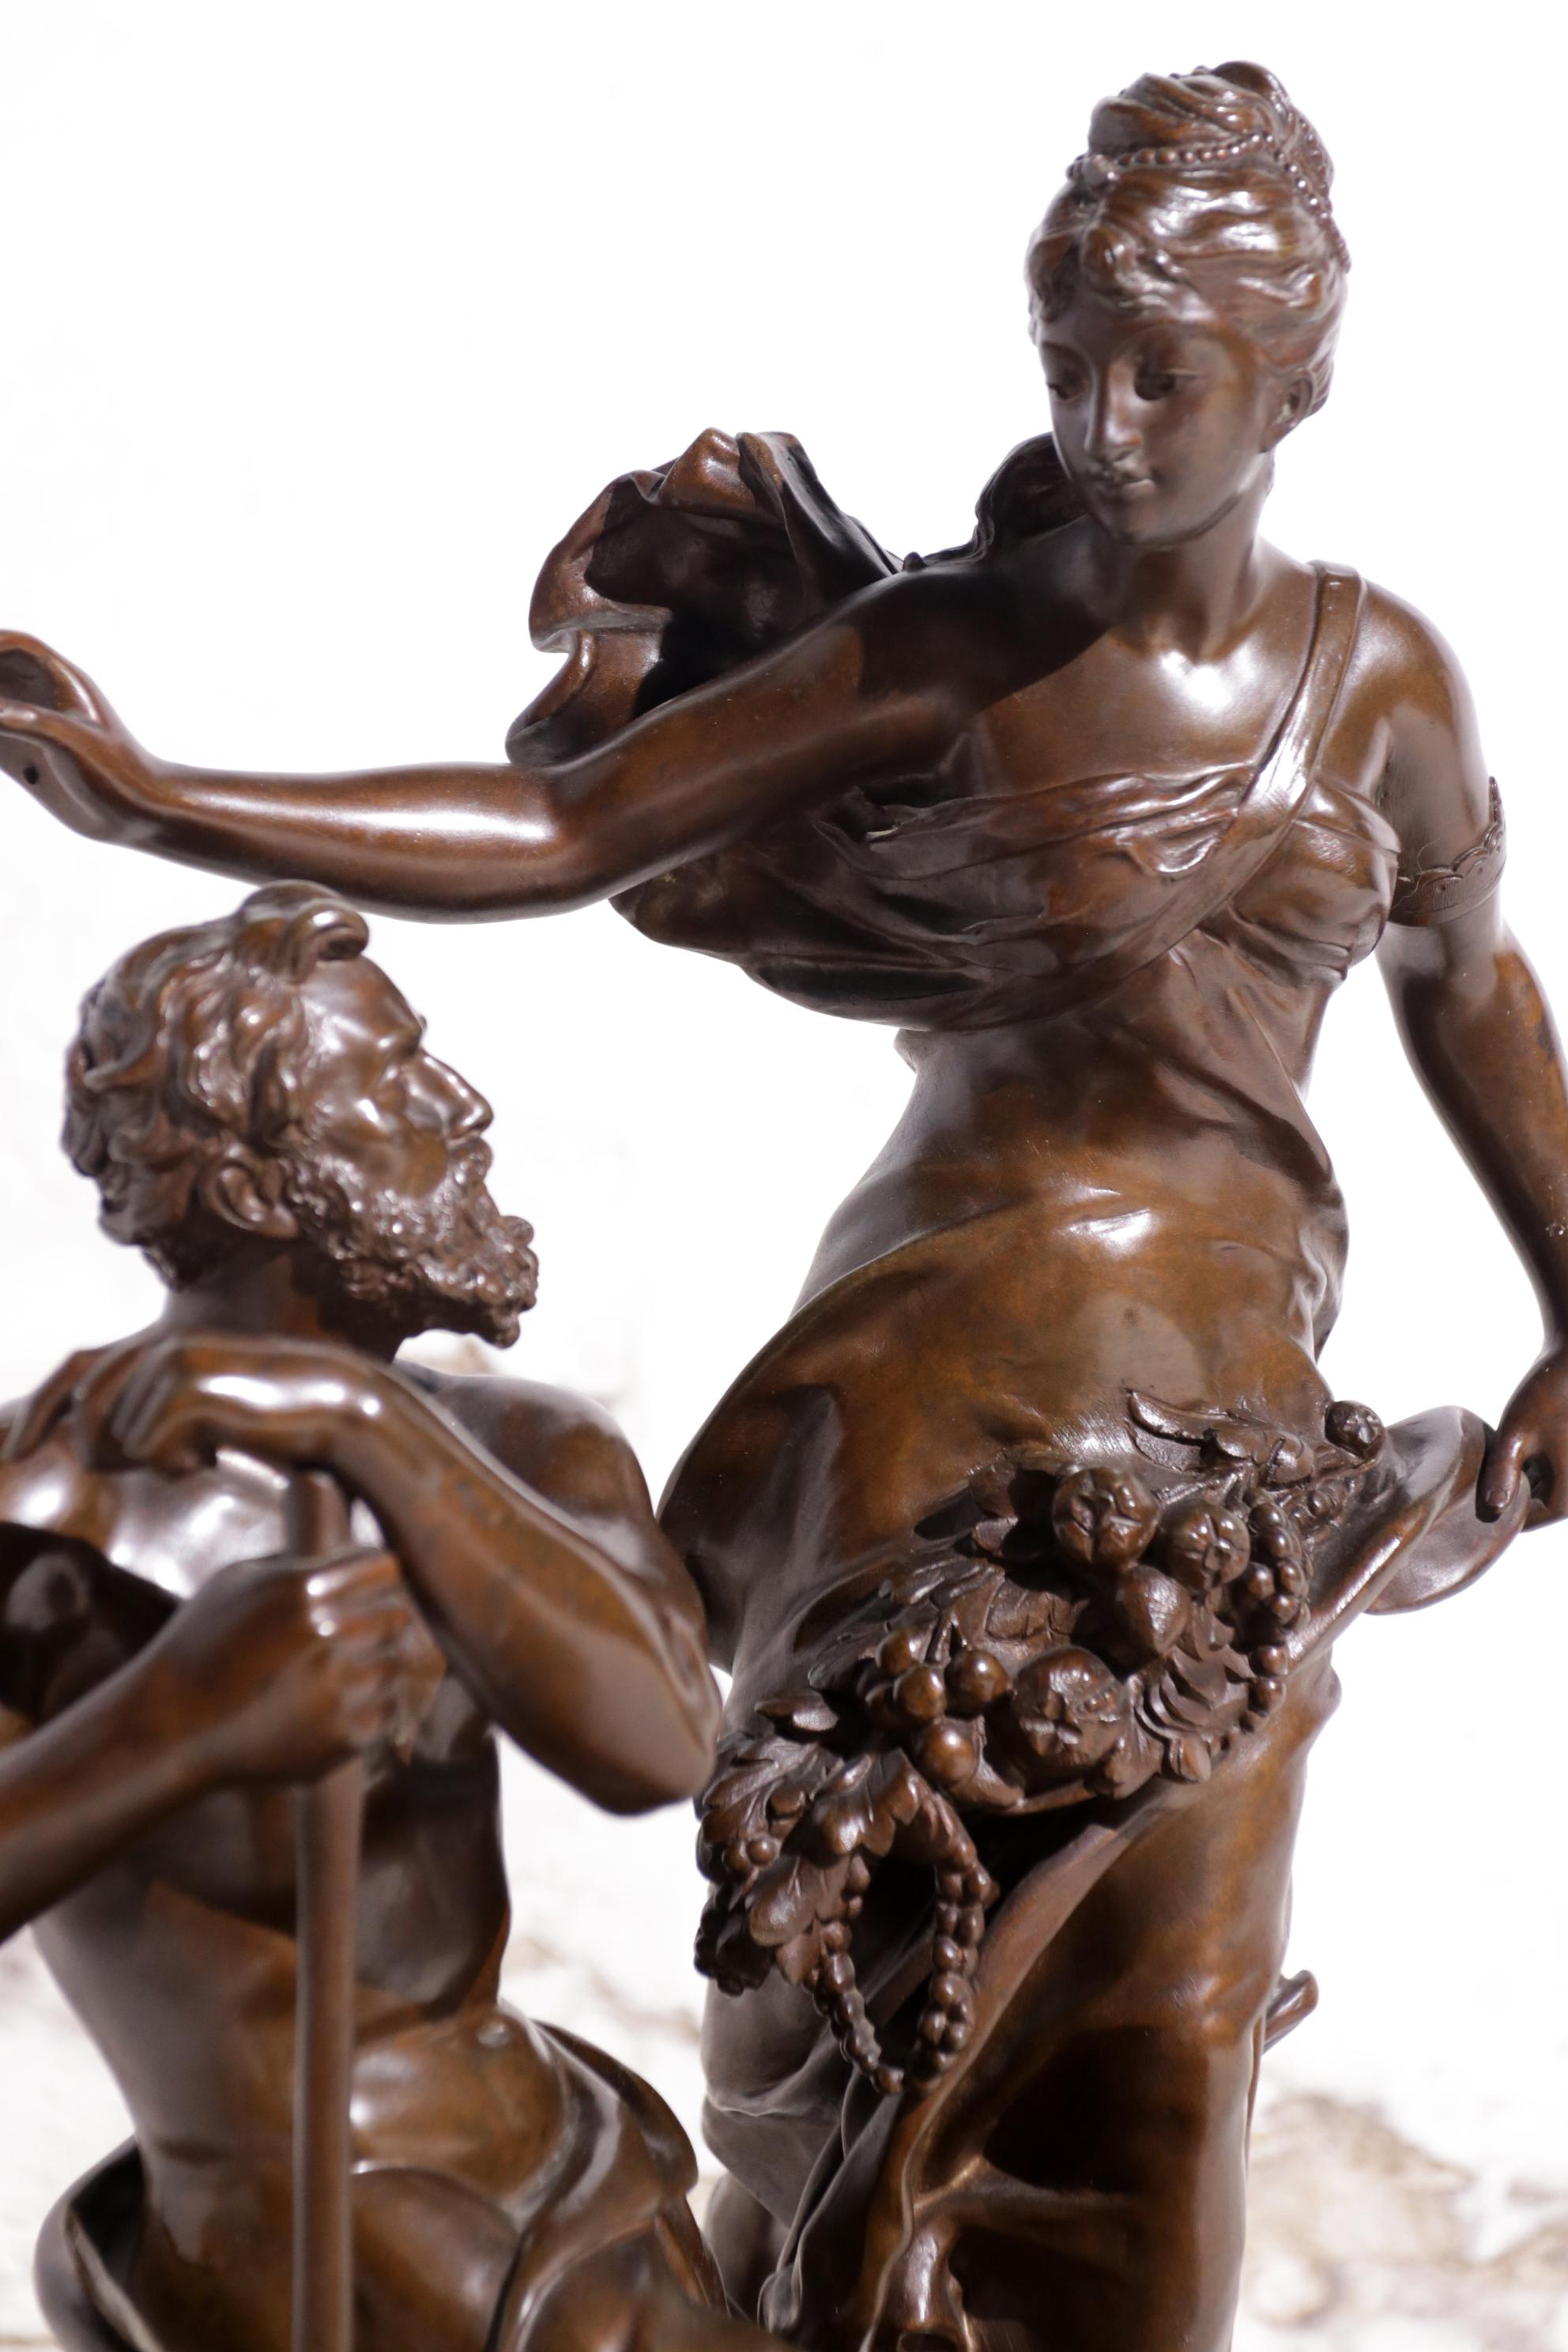 Adrien-Etienne Gaudez, French, 1845-1902 Bronze La Fortune Récomponse Le Travail For Sale 14